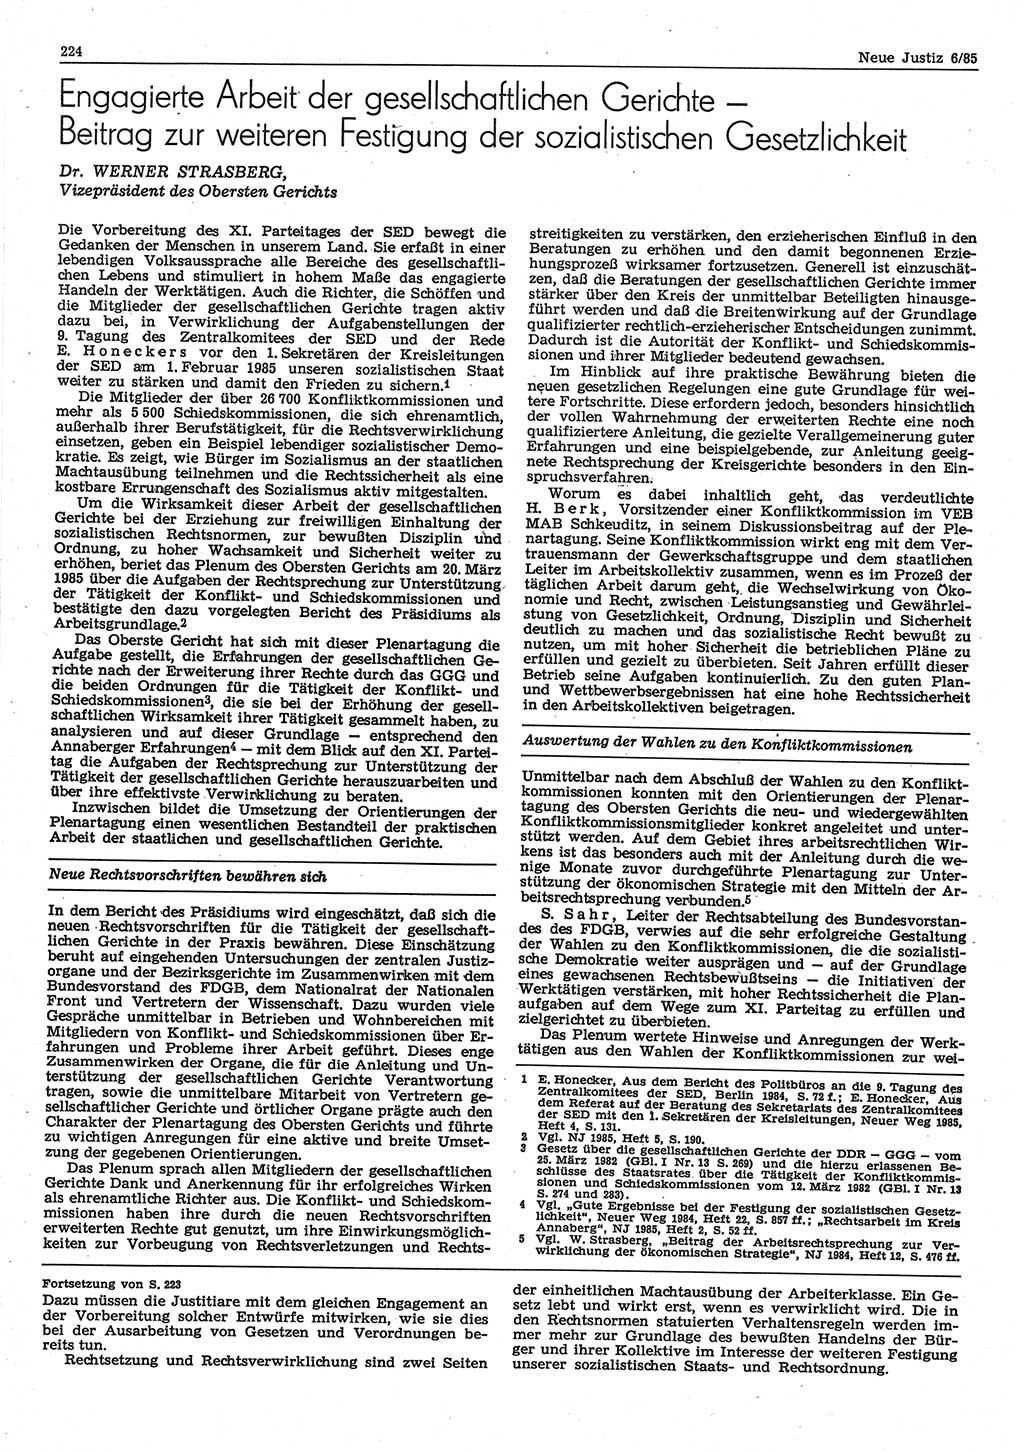 Neue Justiz (NJ), Zeitschrift für sozialistisches Recht und Gesetzlichkeit [Deutsche Demokratische Republik (DDR)], 39. Jahrgang 1985, Seite 224 (NJ DDR 1985, S. 224)